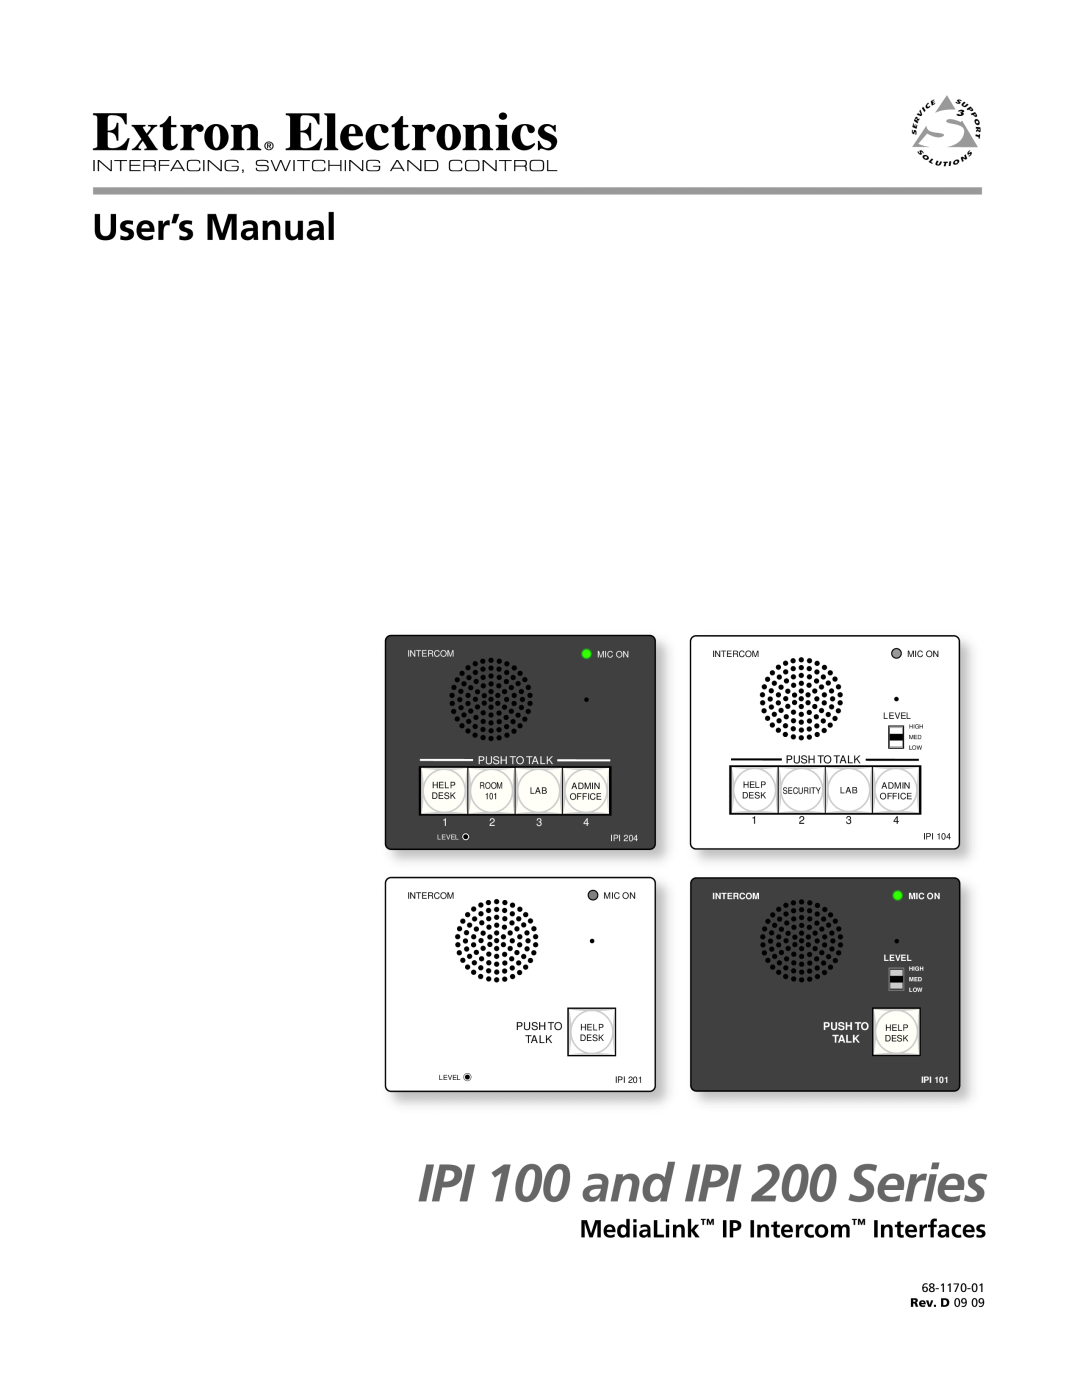 Extron electronic IPI 104 installation instructions IPI 100 Series Overview, IPI 100 Series Installation Instructions 